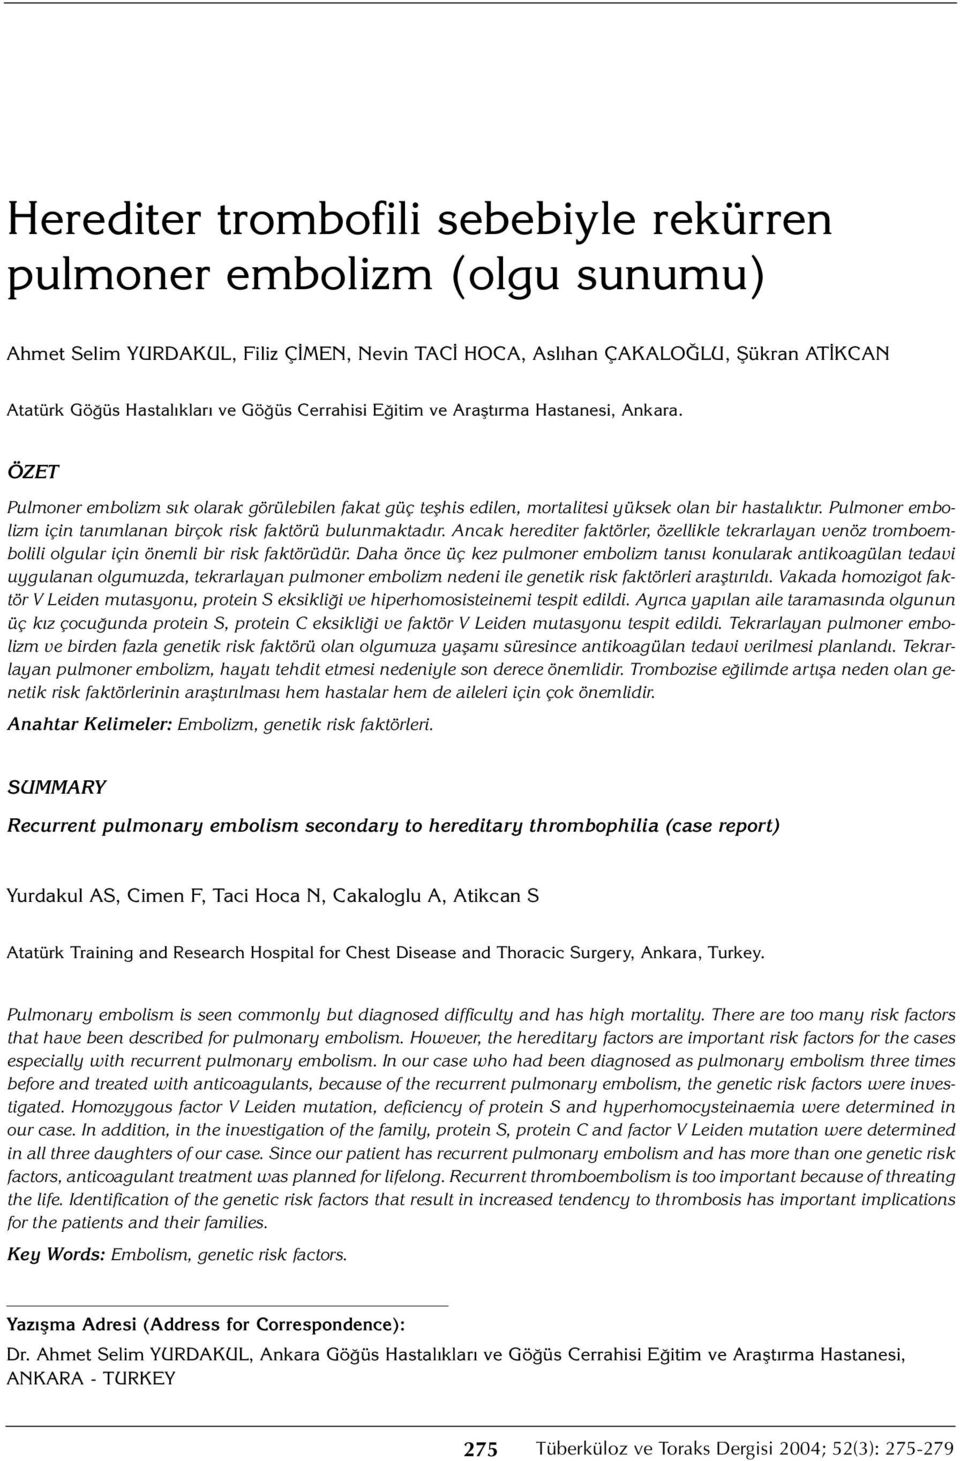 Pulmoner embolizm için tanımlanan birçok risk faktörü bulunmaktadır. Ancak herediter faktörler, özellikle tekrarlayan venöz tromboembolili olgular için önemli bir risk faktörüdür.